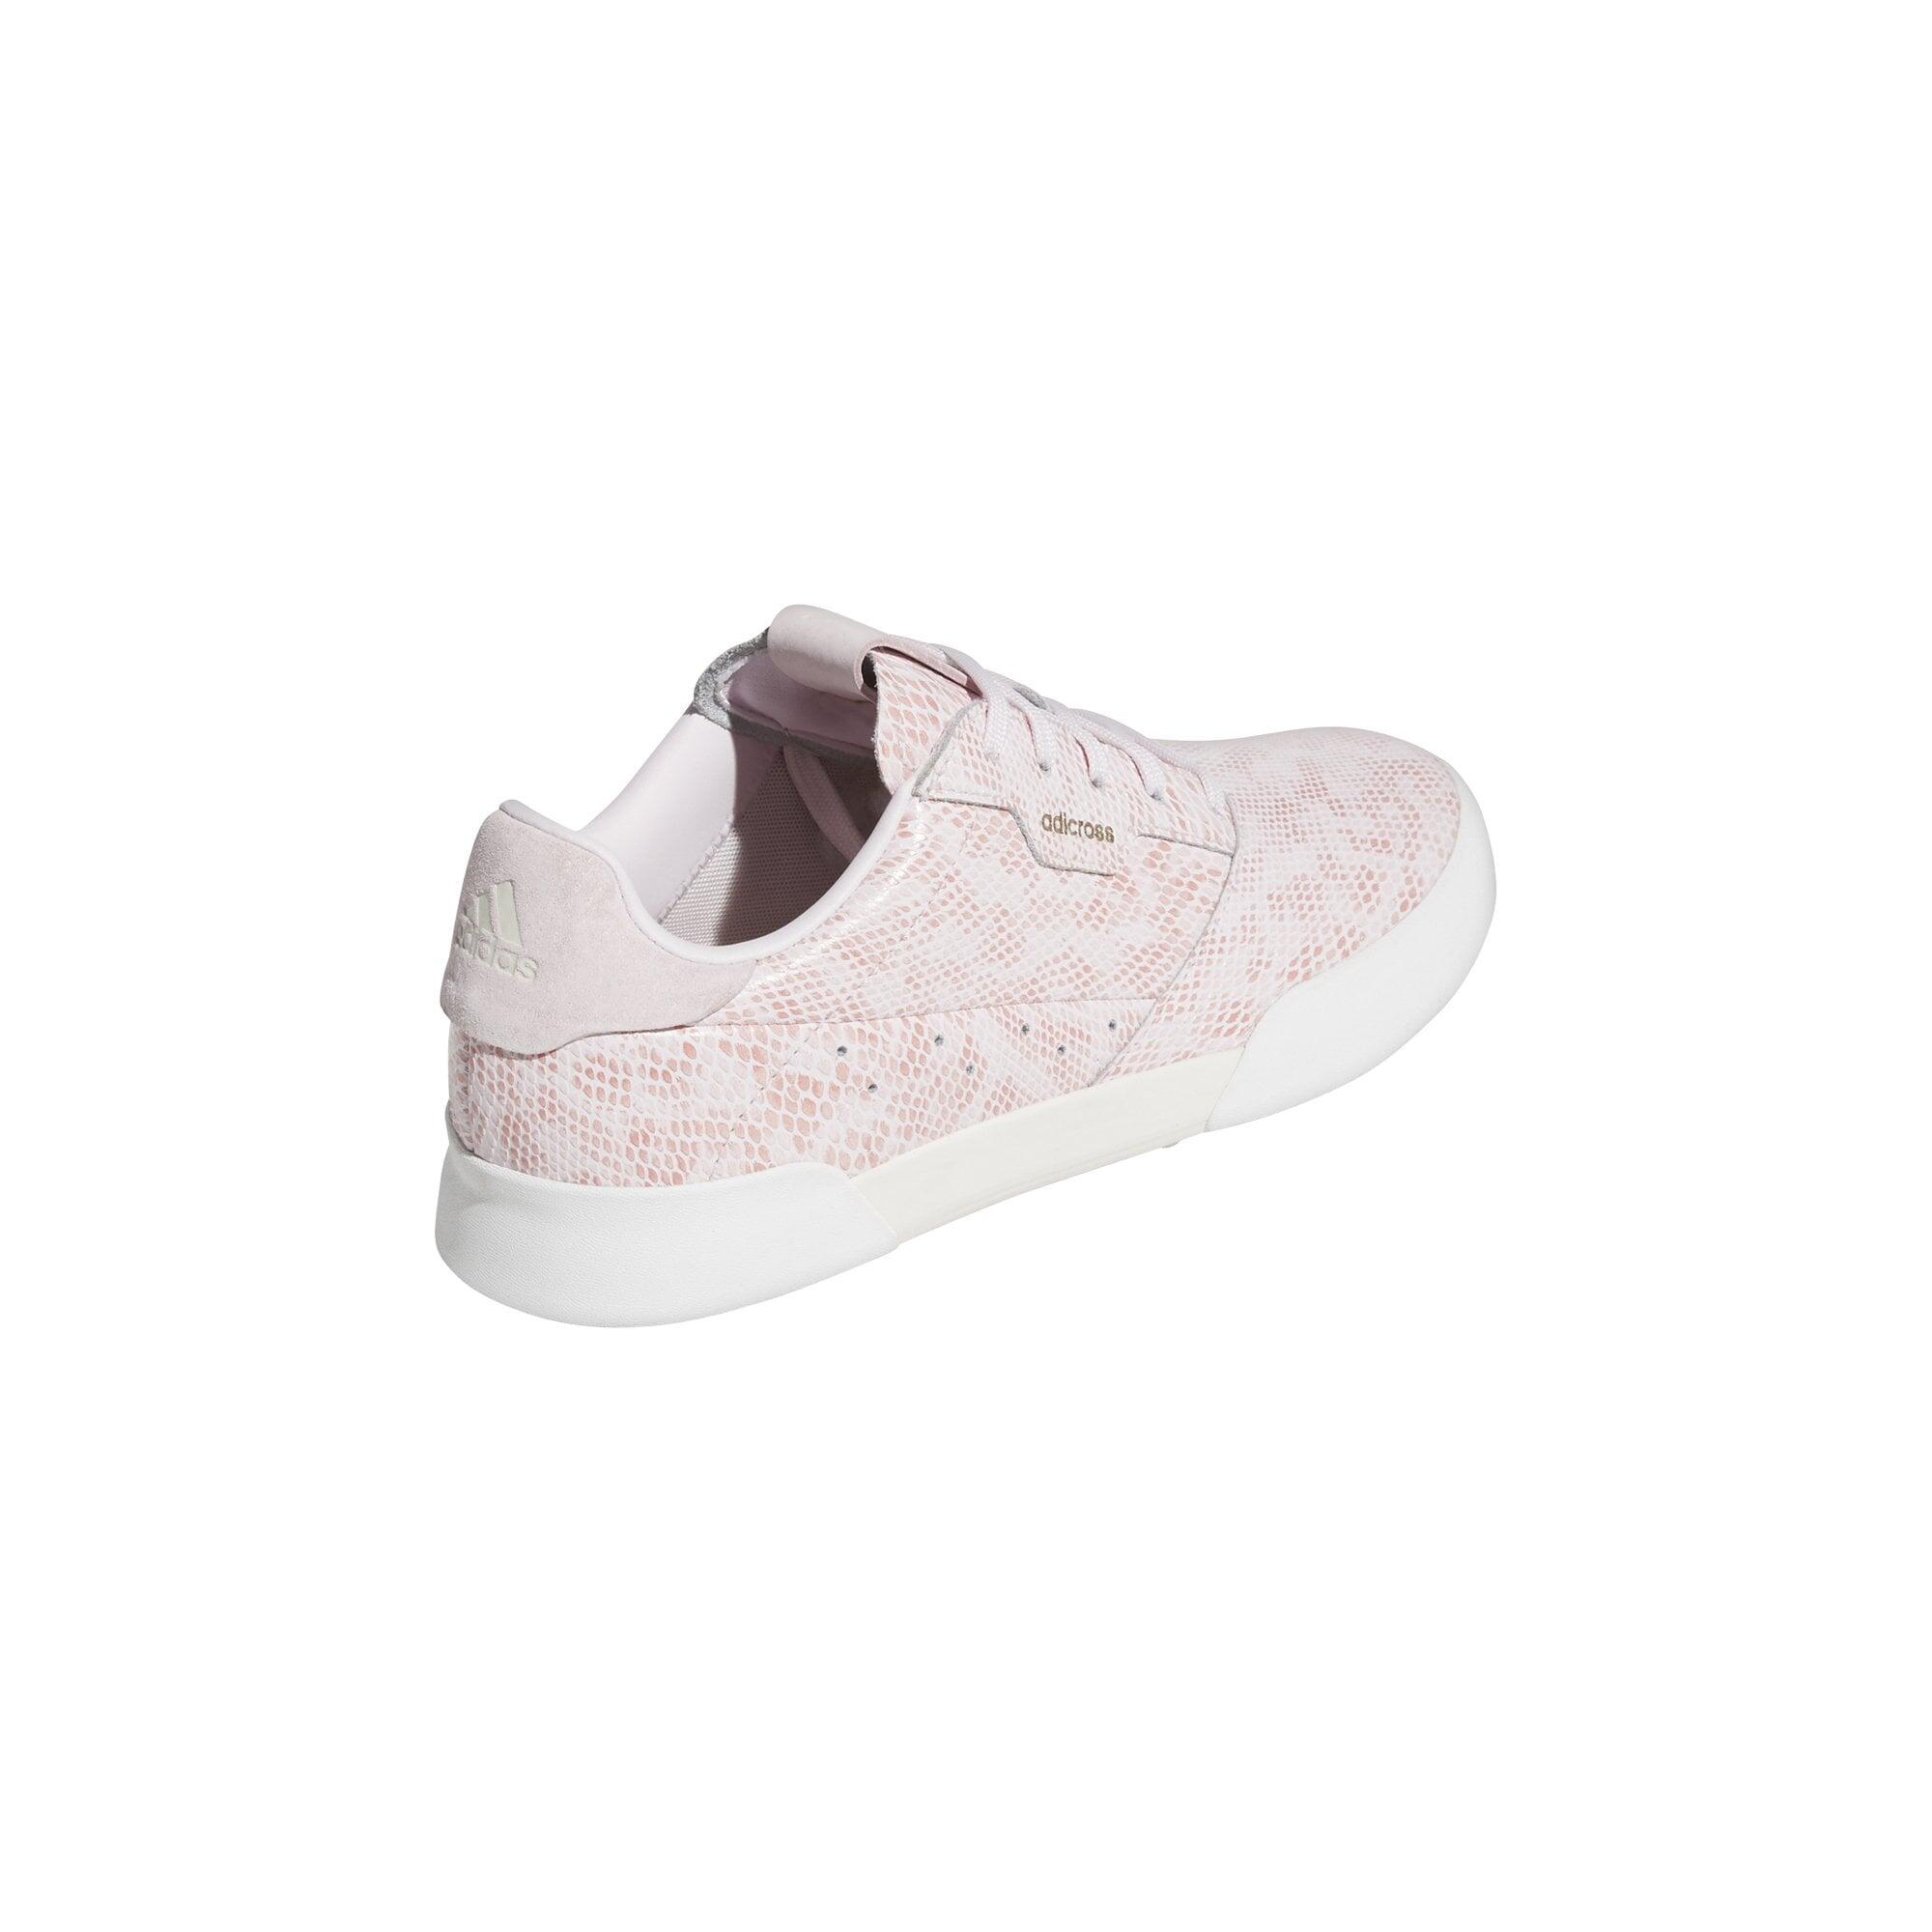 adidas Women's Adicross Retro Spikeless Golf Shoes - Pink 4/5